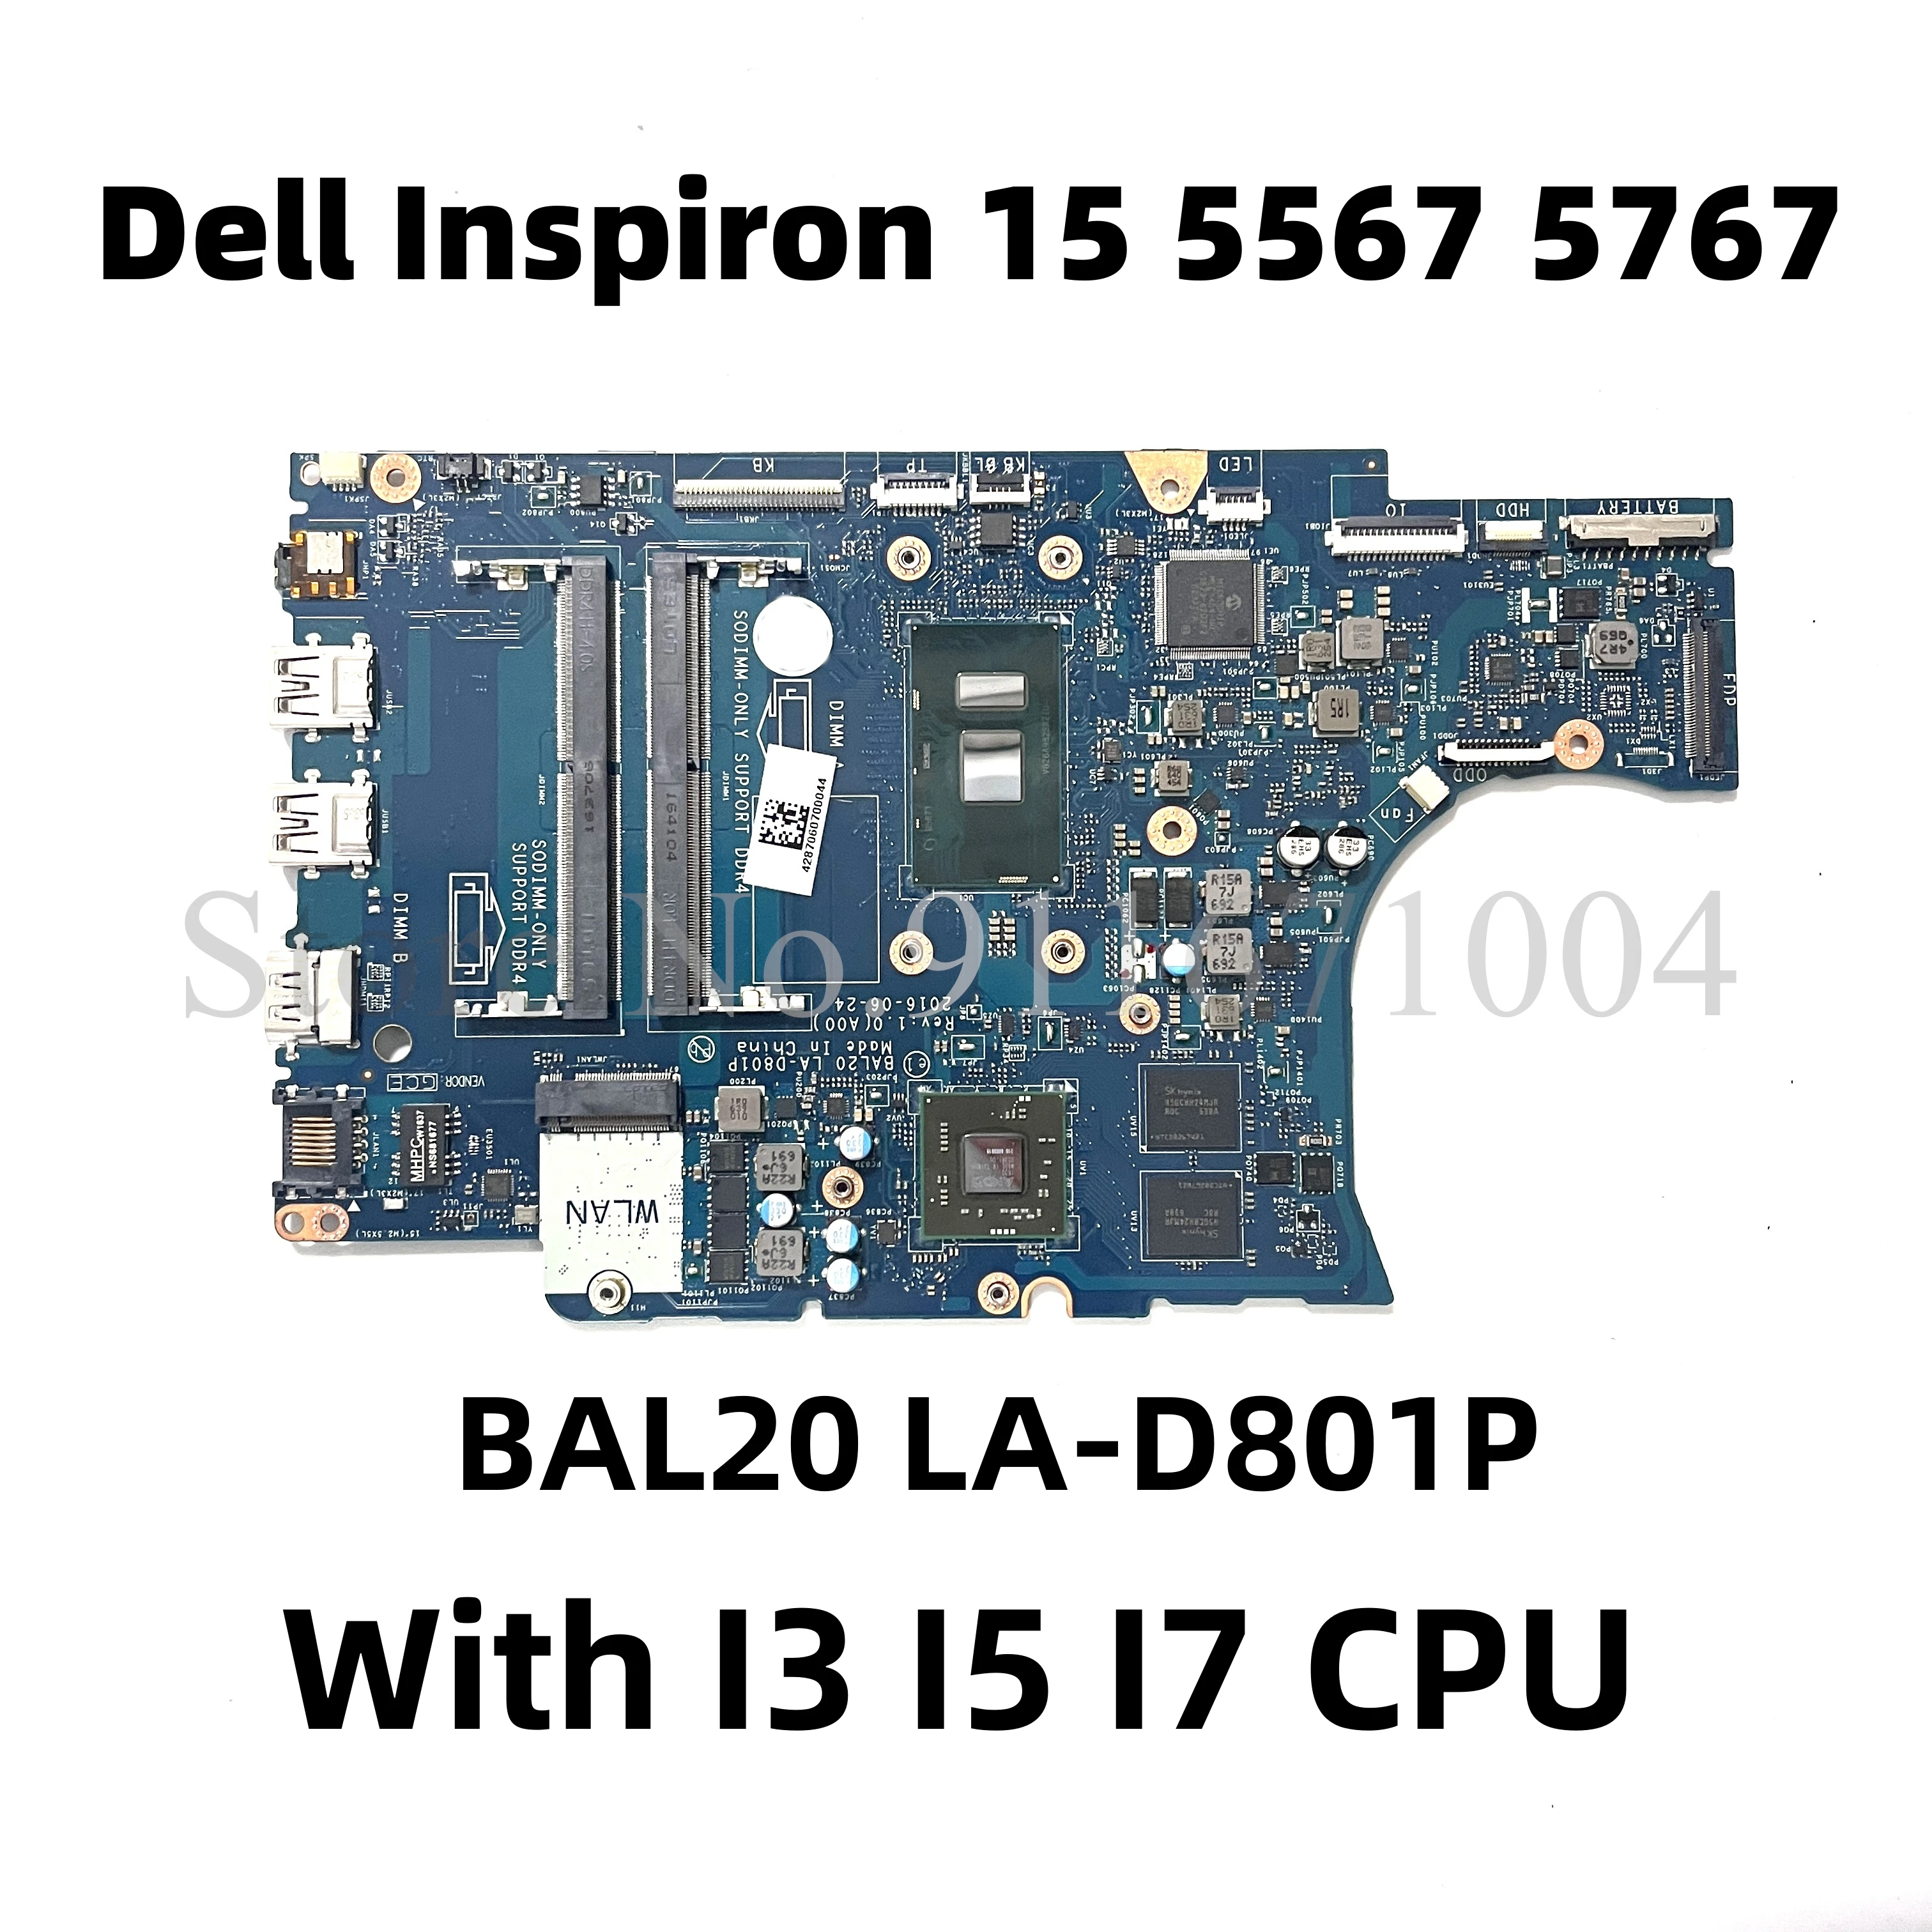 

BAL20 LA-D801P For dell Inspiron 15 5567 5767 Laptop Motherboard With I3 I5 I7 CPU R7-440M GPU CN-0CV3V4 06682Y 0Y8N7H 02PVGT